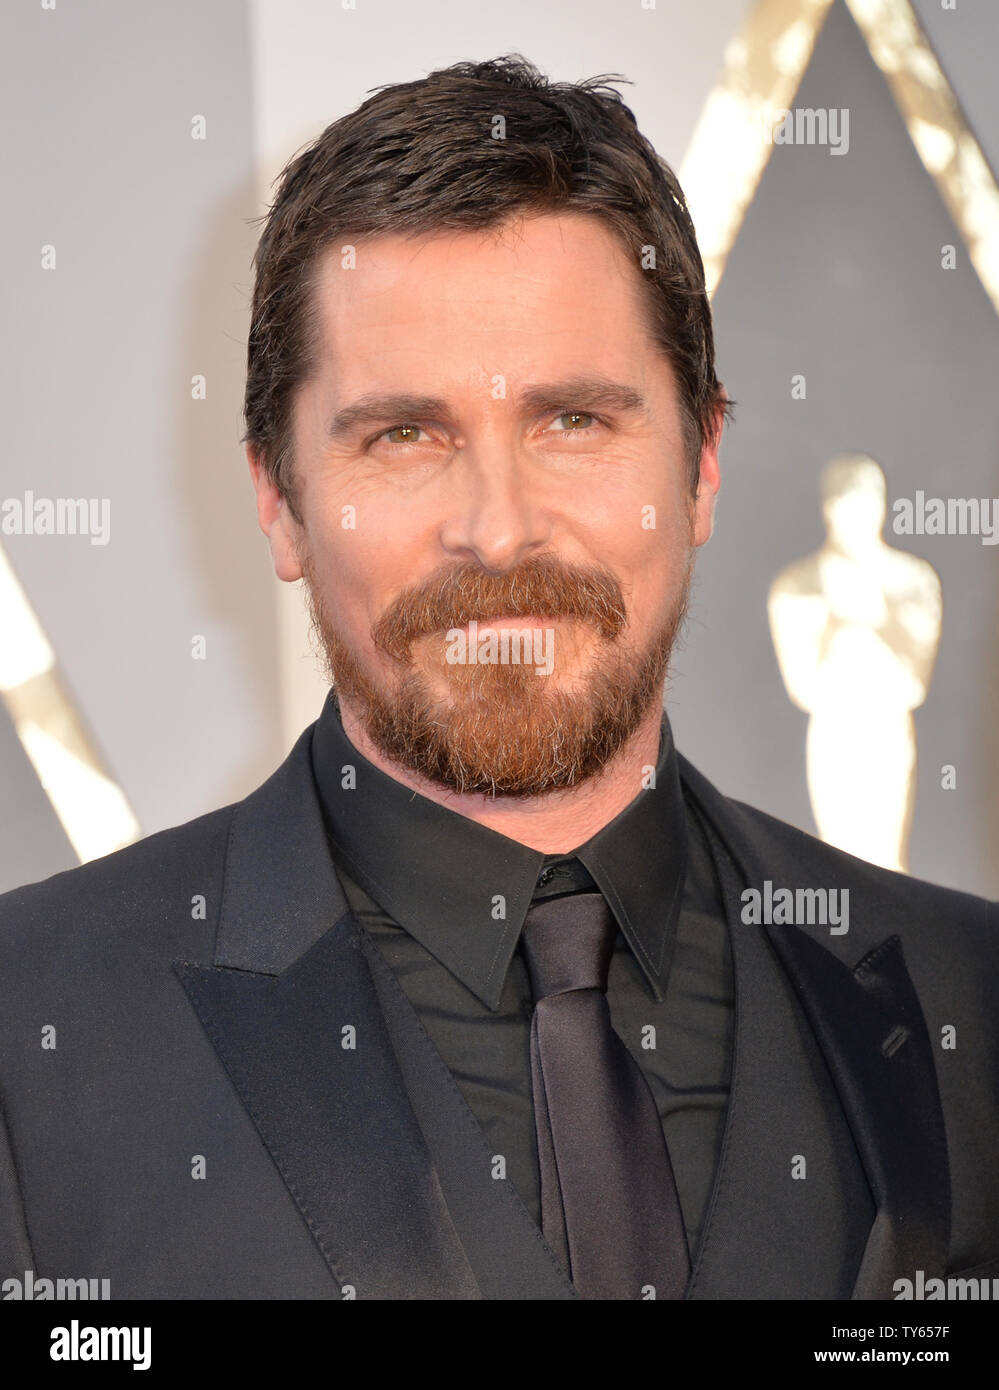 Christian Bale arriva sul tappeto rosso per la 88th Academy Awards a Hollywood e Highland Center nella sezione di Hollywood di Los Angeles il 28 febbraio 2016. Foto di Kevin Dietsch/UPI Foto Stock